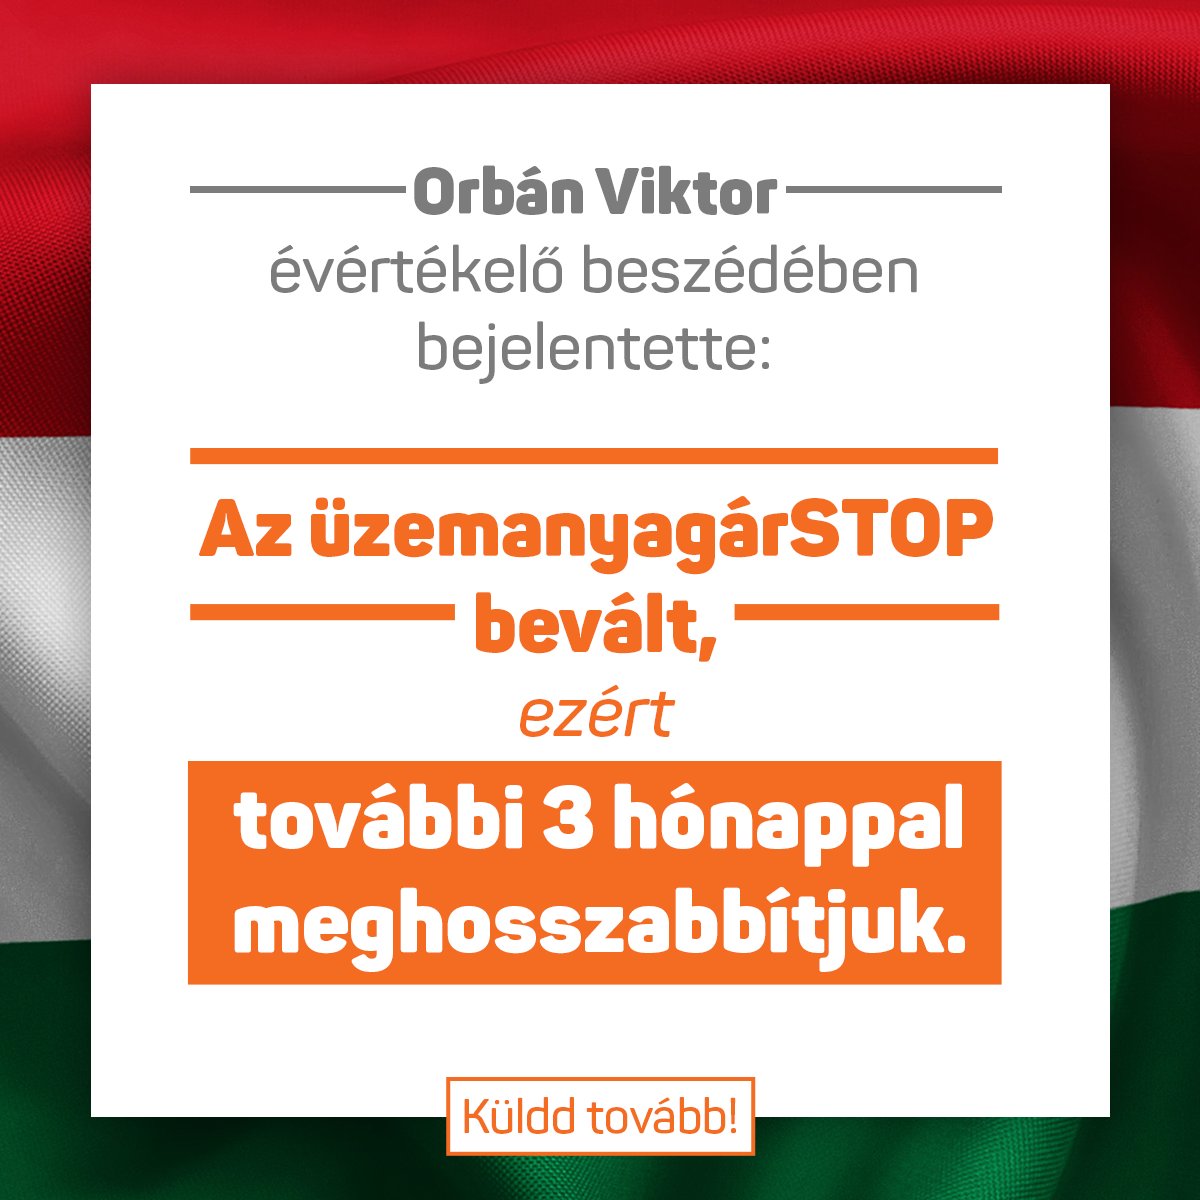 Orbán Viktor bejelentette: „az üzemanyagárSTOP bevált, ezért további 3 hónappal meghosszabbítjuk!”